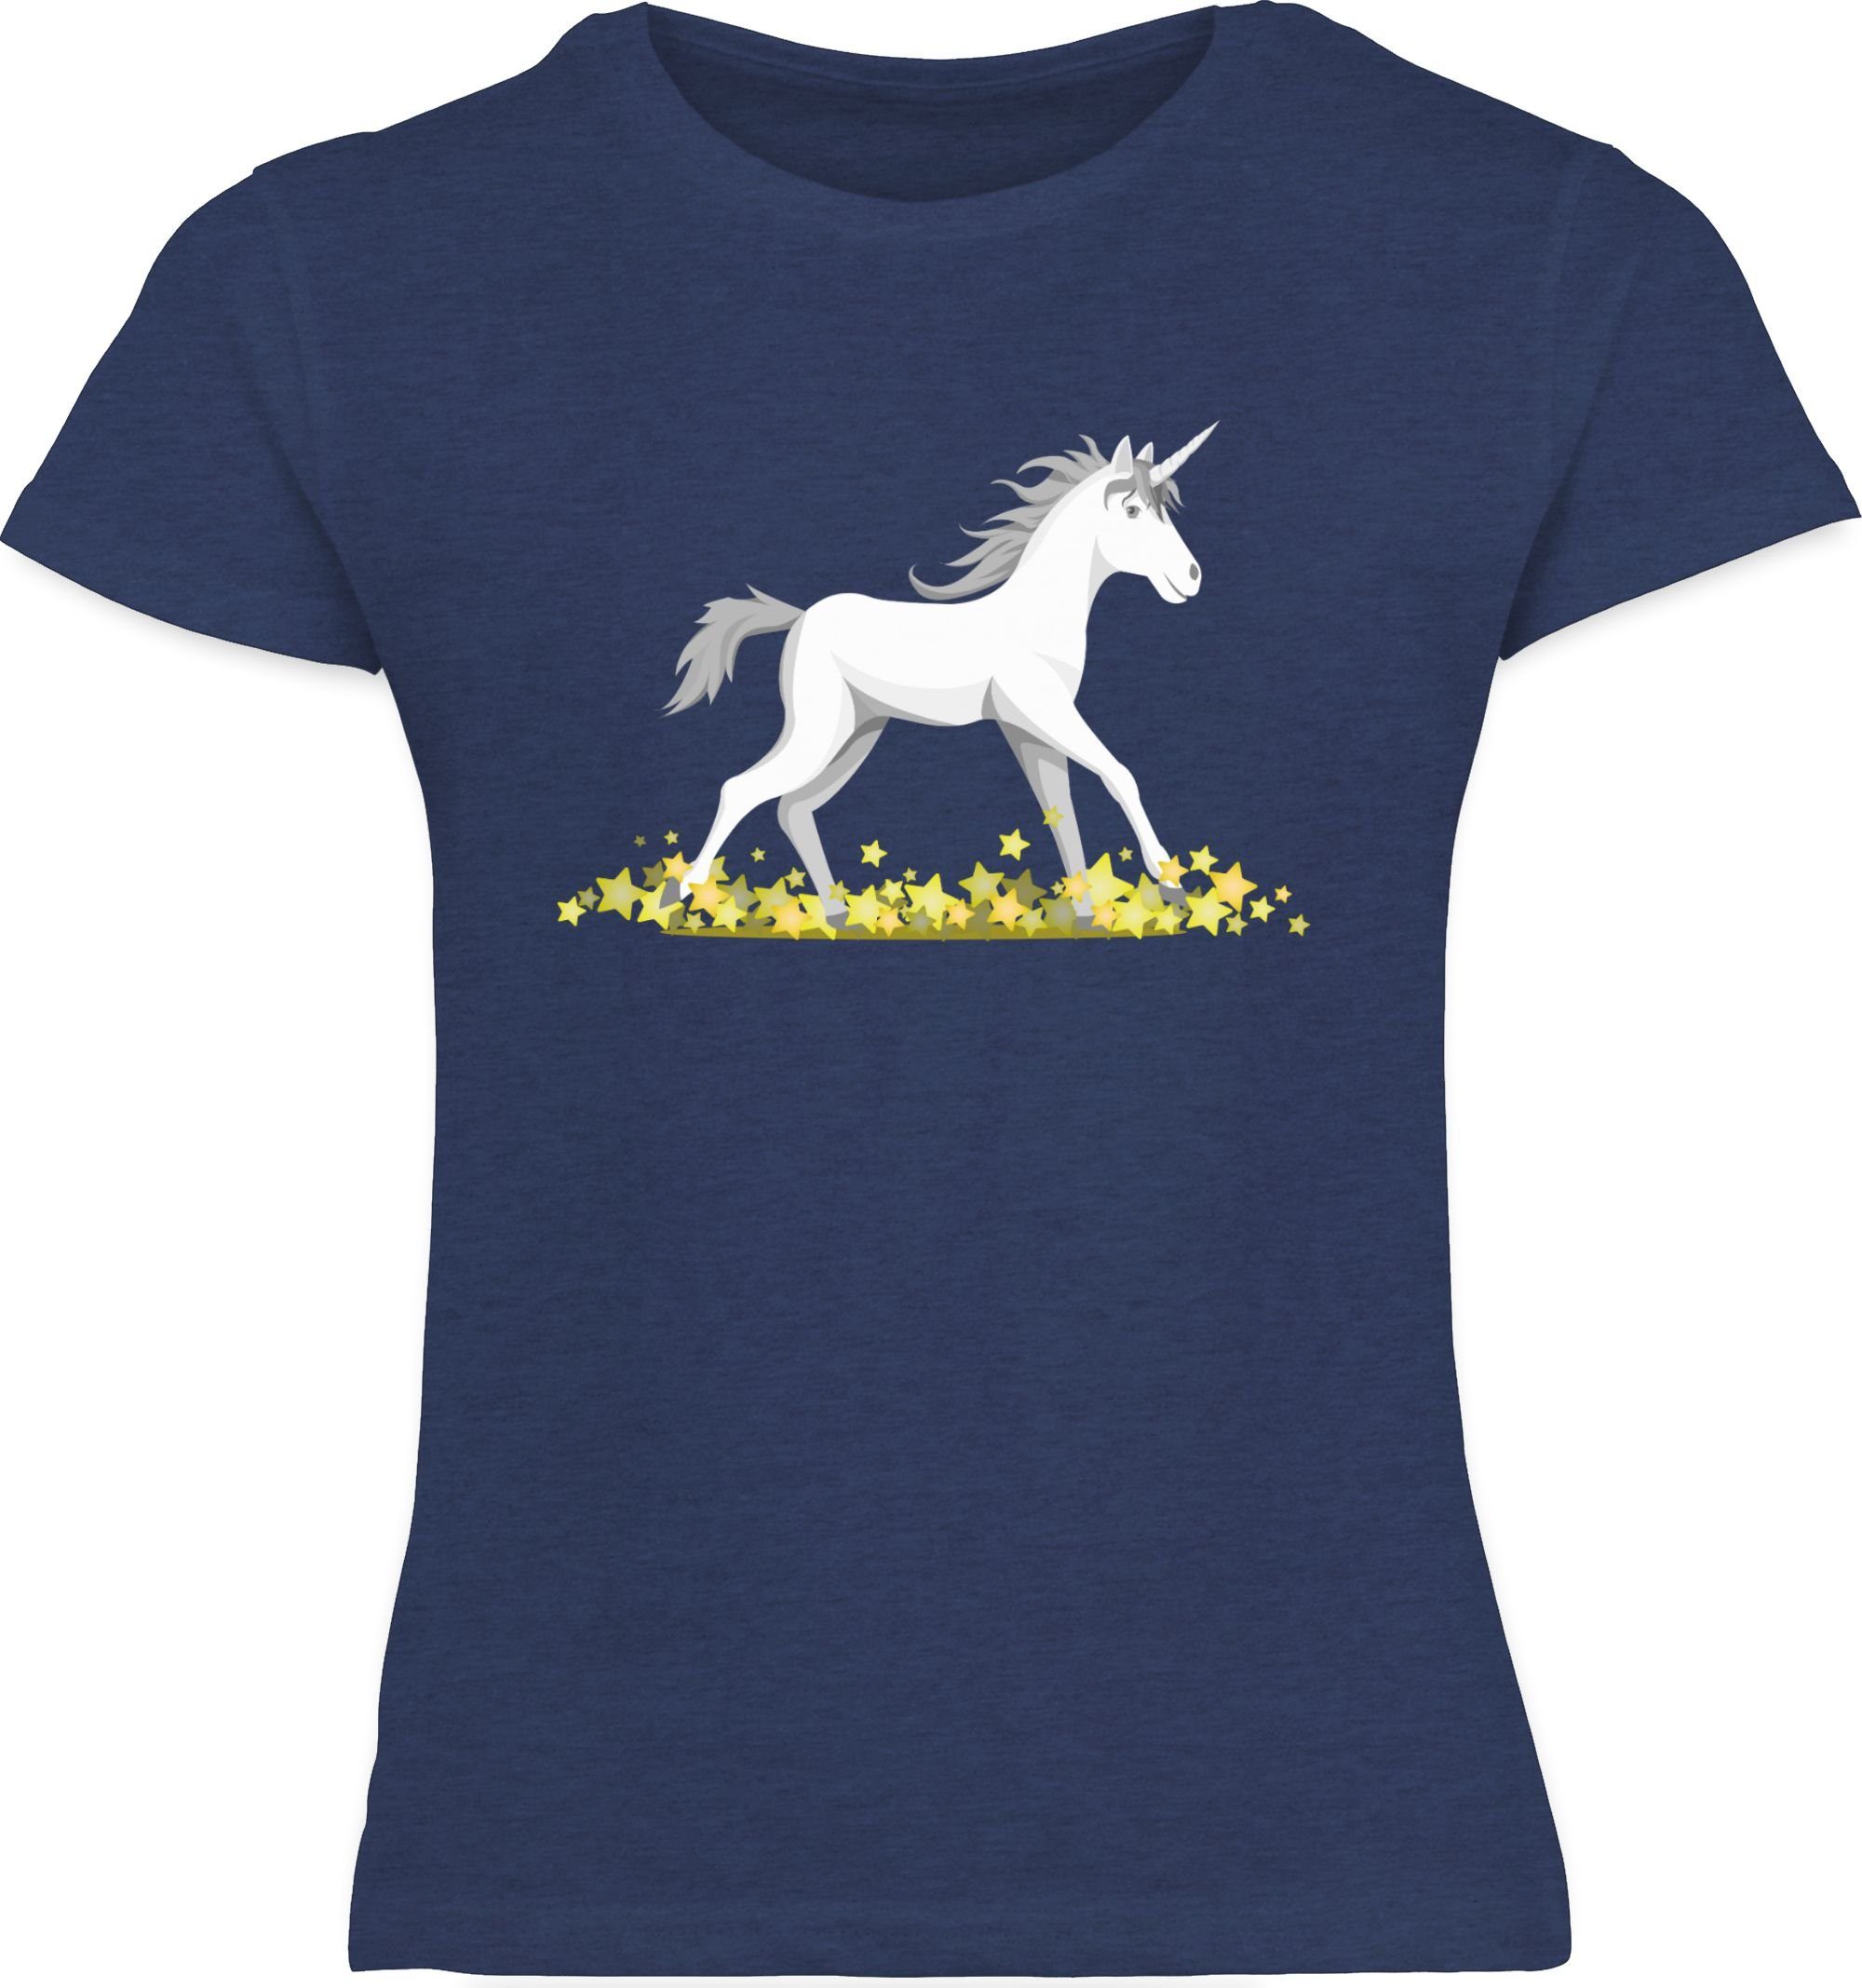 Shirtracer 2 Co Meliert und T-Shirt Unicorn Dunkelblau Kinderkleidung Einhorn